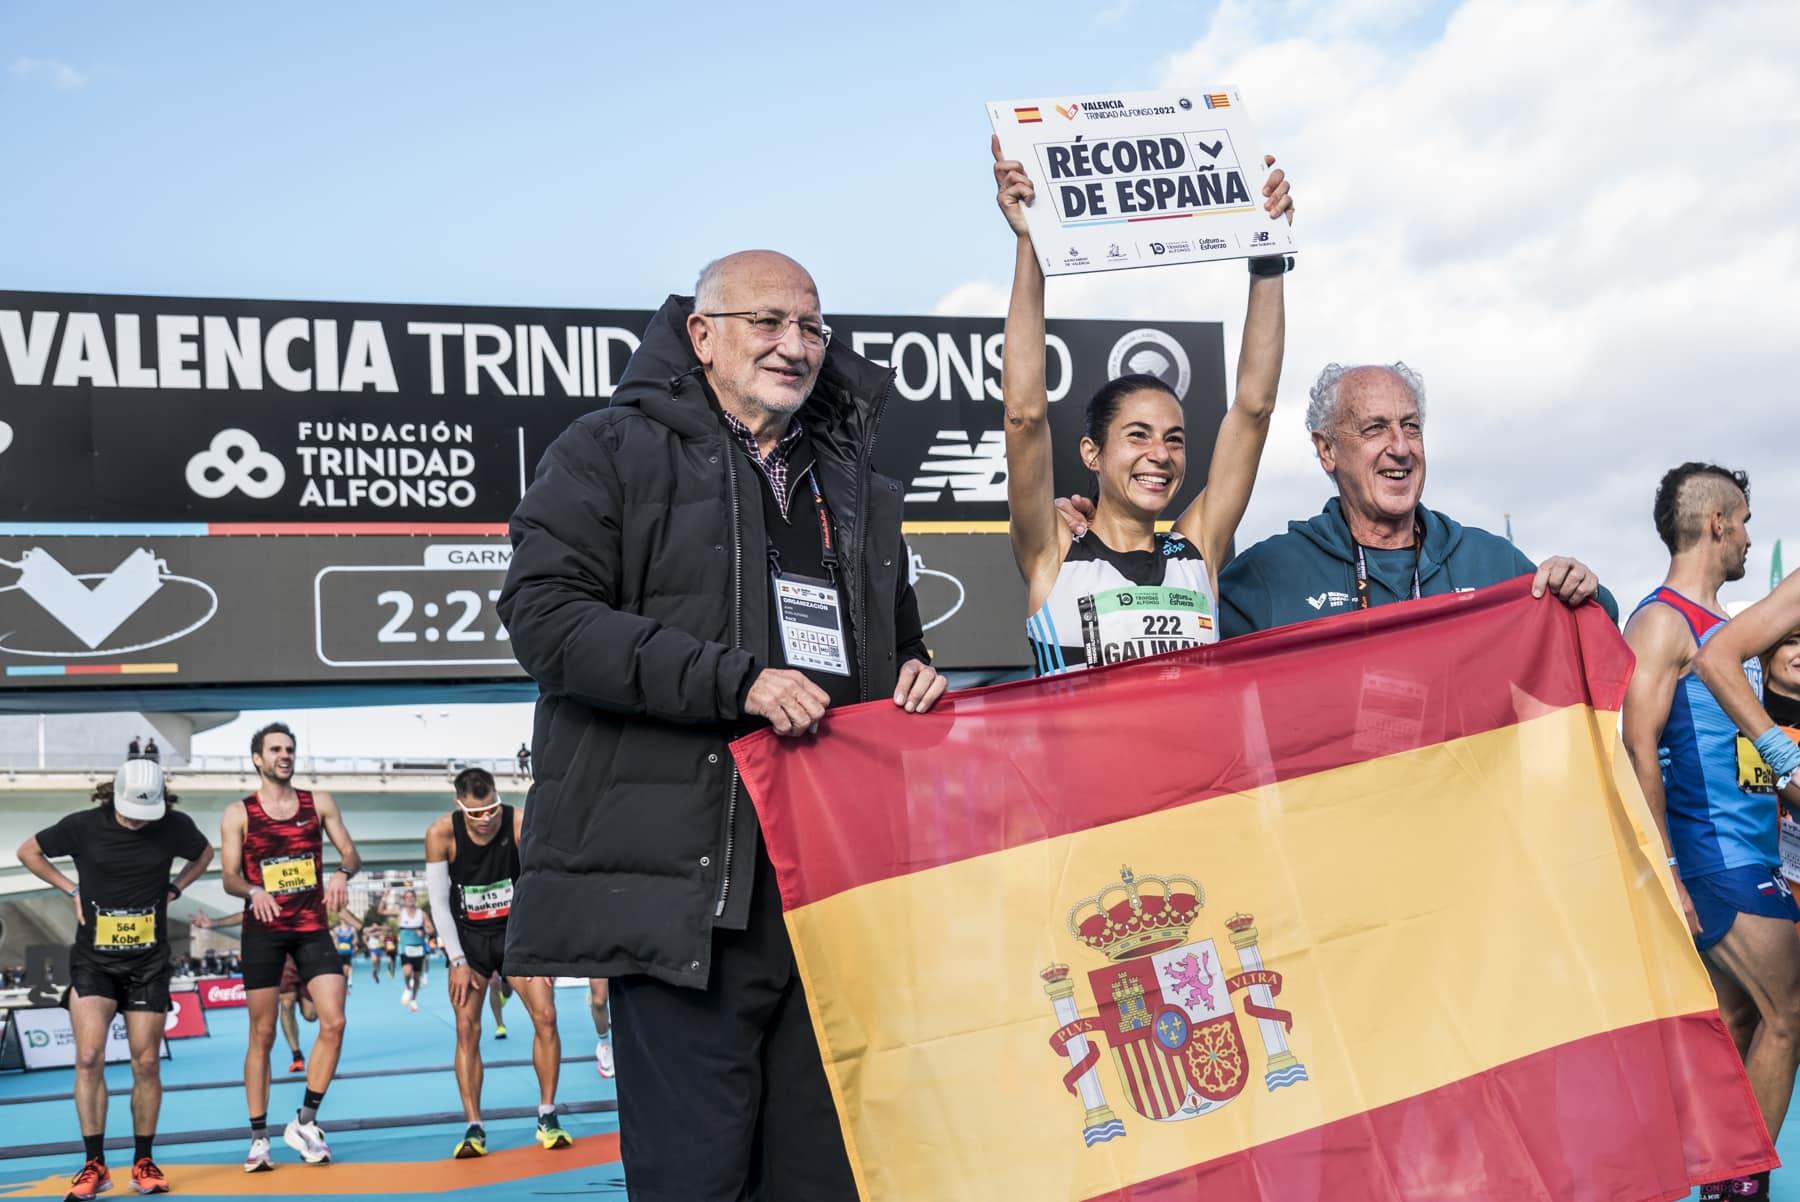  Marta Galimany batió el récord de España M35 de maratón en Valencia..jpeg